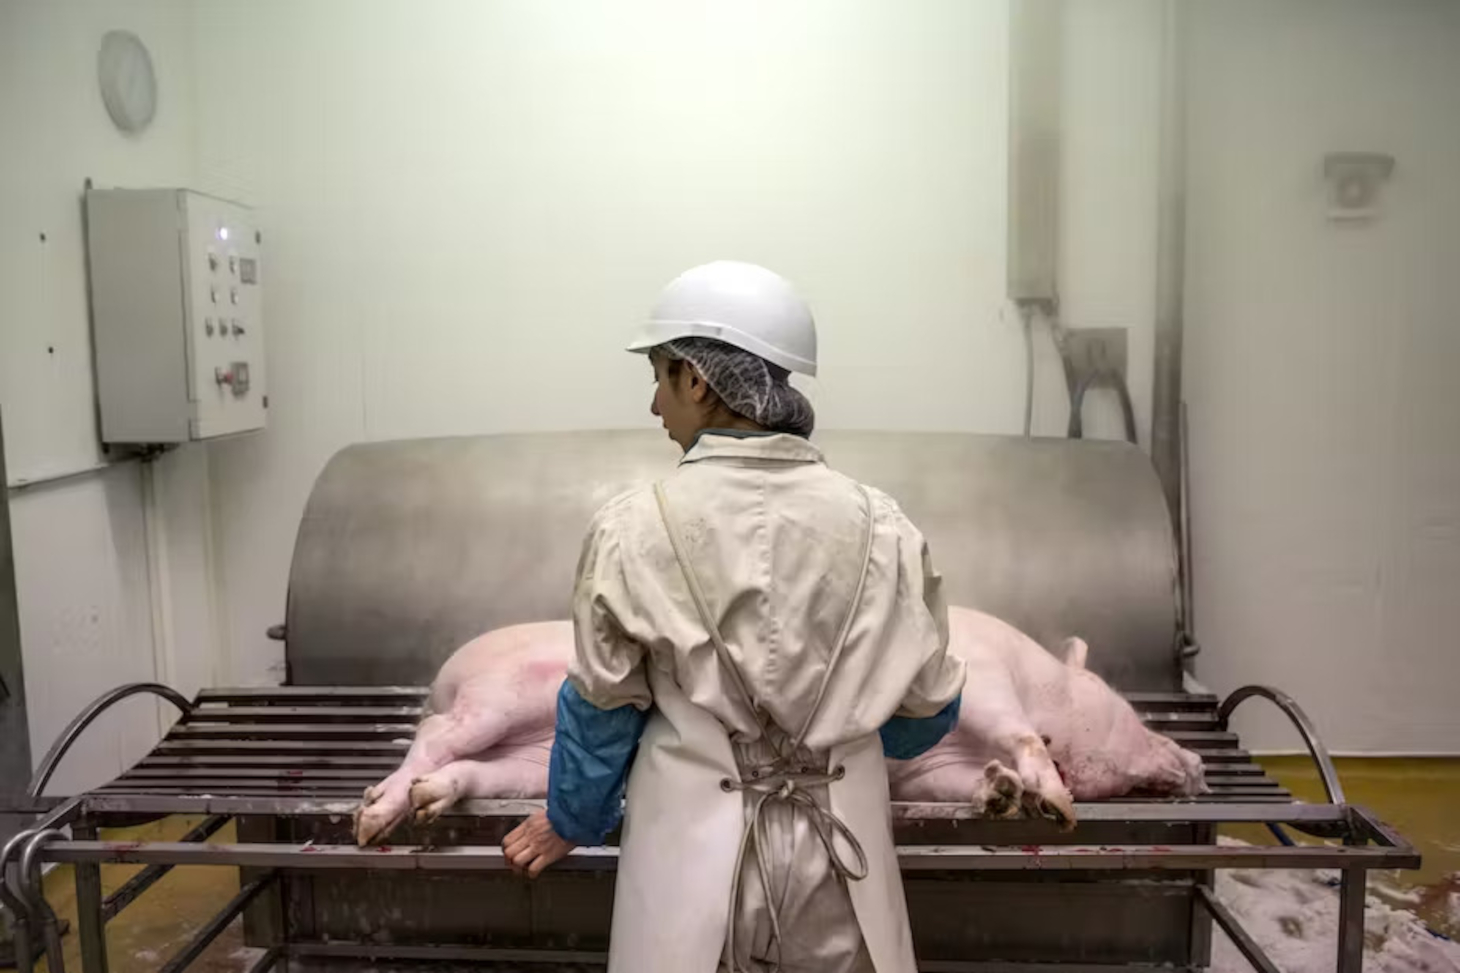 Éleveuse intervenant dans un abattoir paysan, en avril 2022. Alberto Campi, Fourni par l'auteur